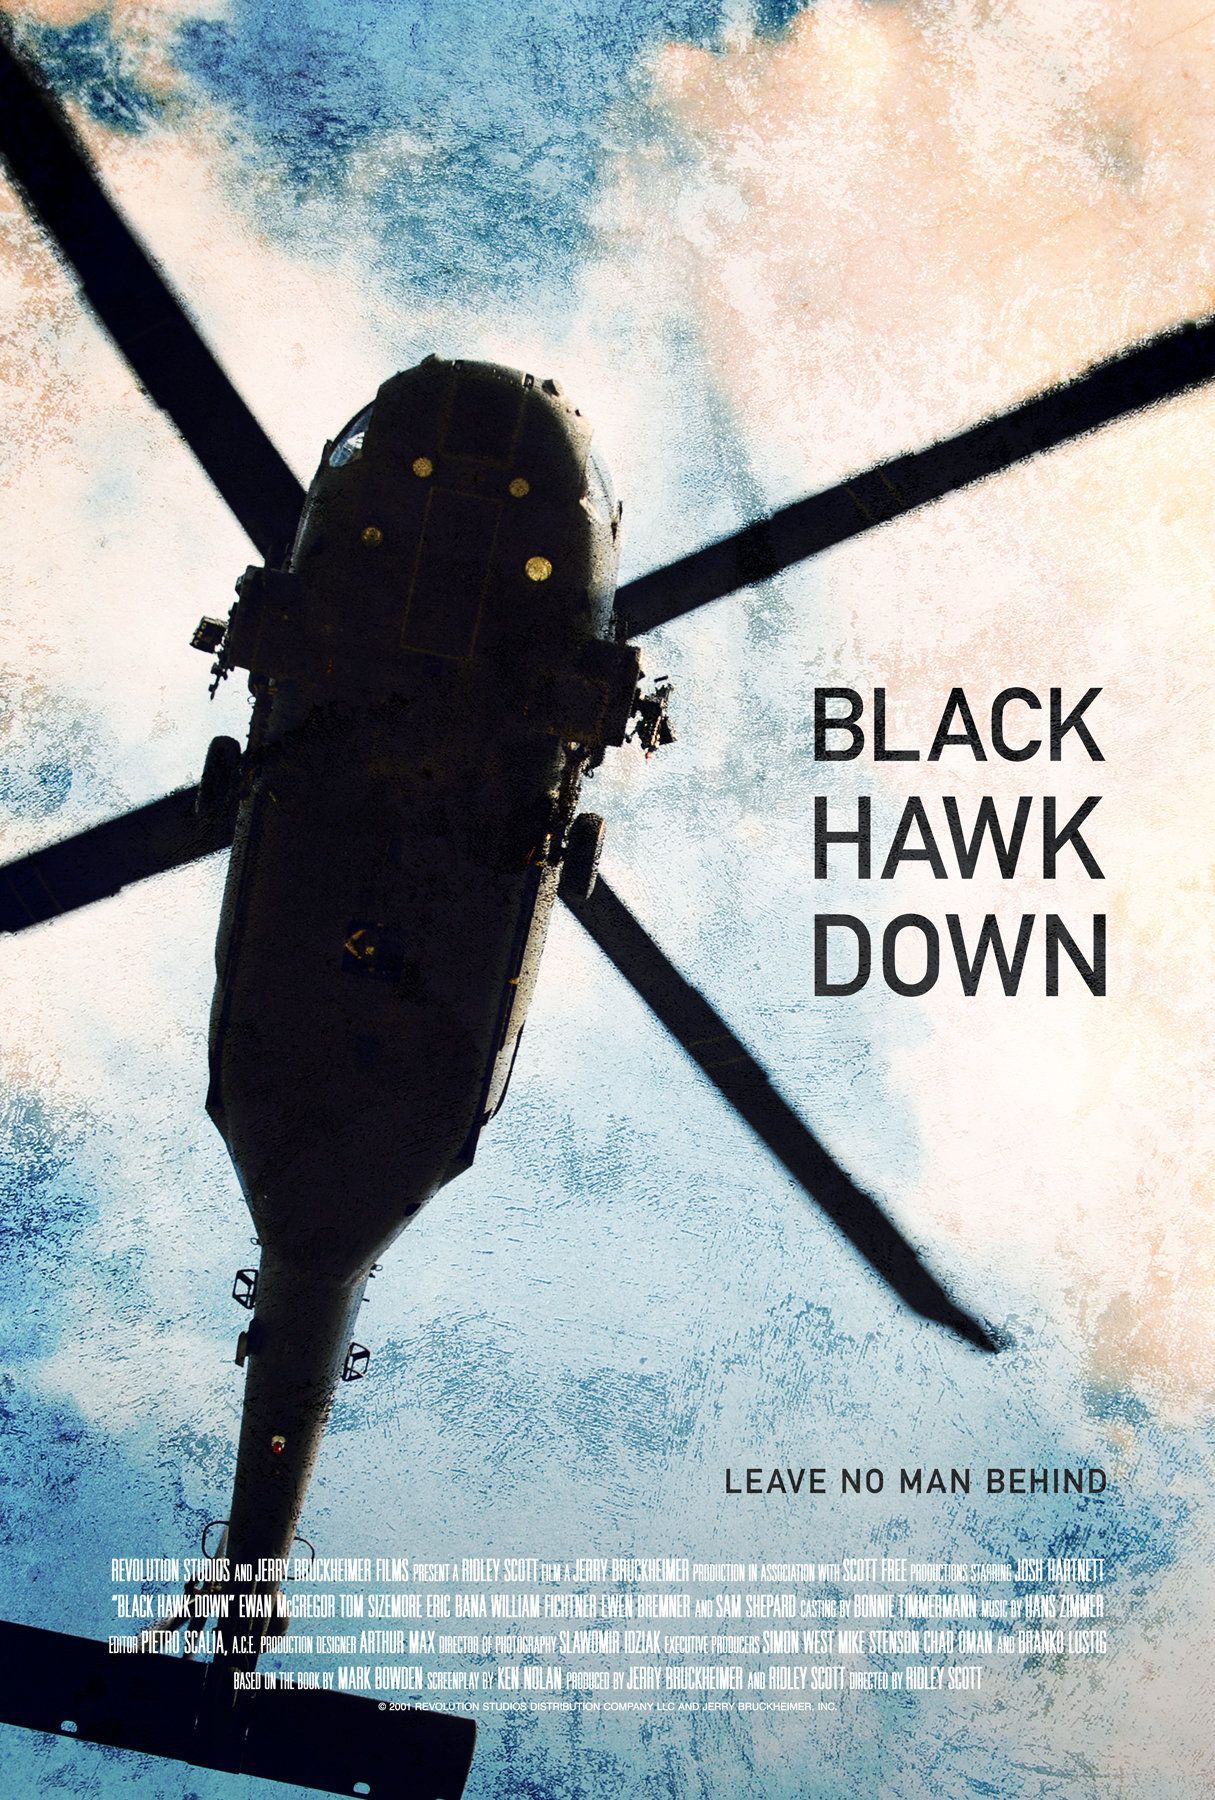 Black hawk down, Film posters art, Best movie posters